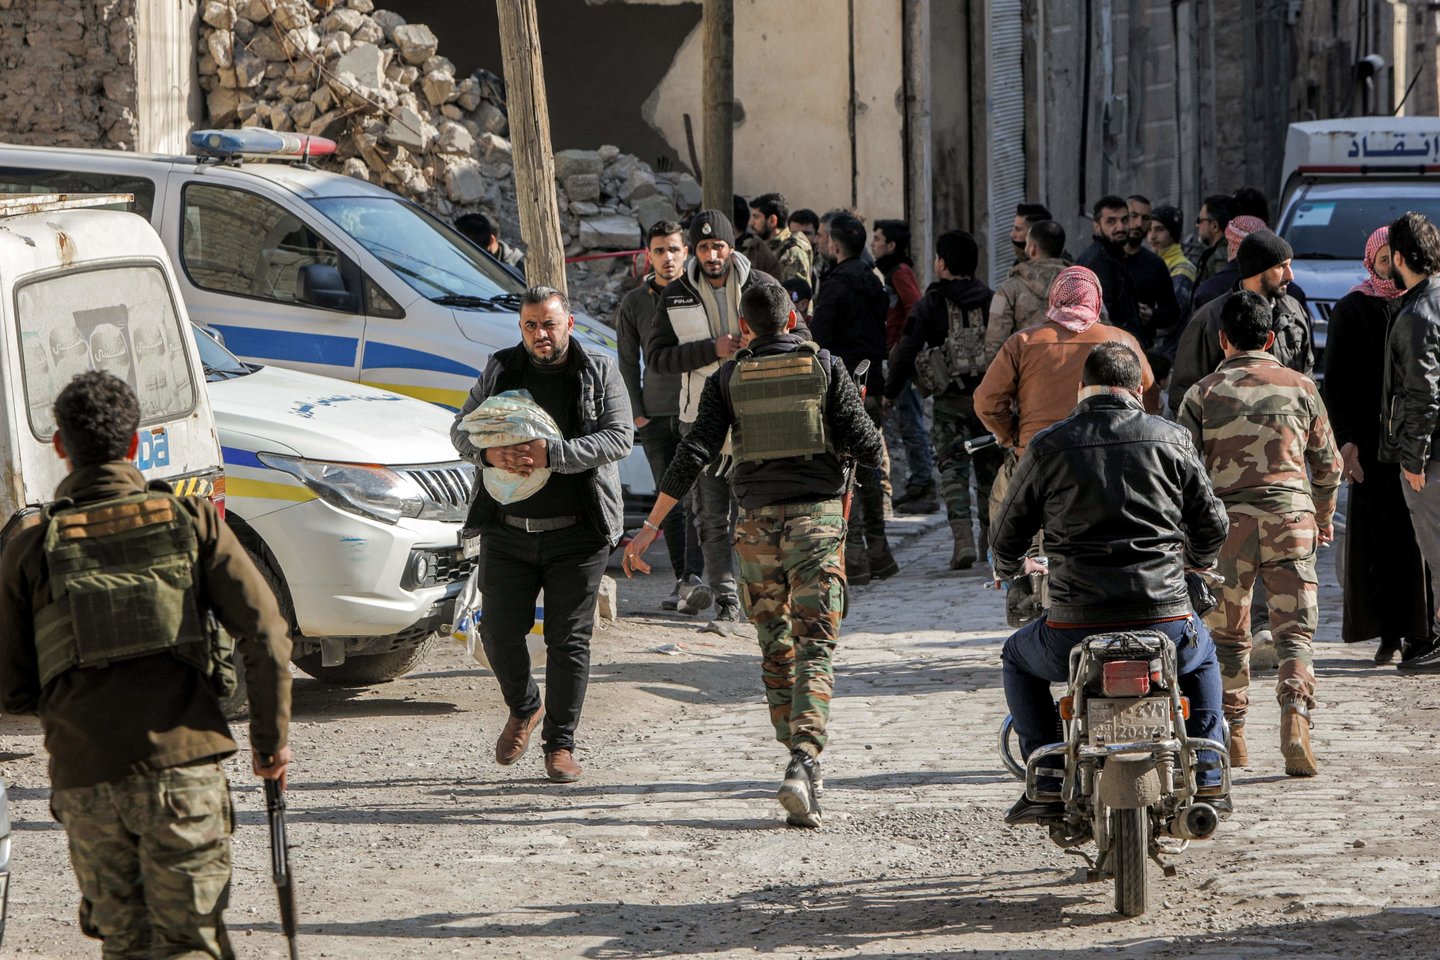 Prieš svarbų JT balsavimą į Sirijos sukilėlių teritoriją įvažiavo pagalbos konvojus.<br>AFP/Scanpix asociatyvi nuotr.